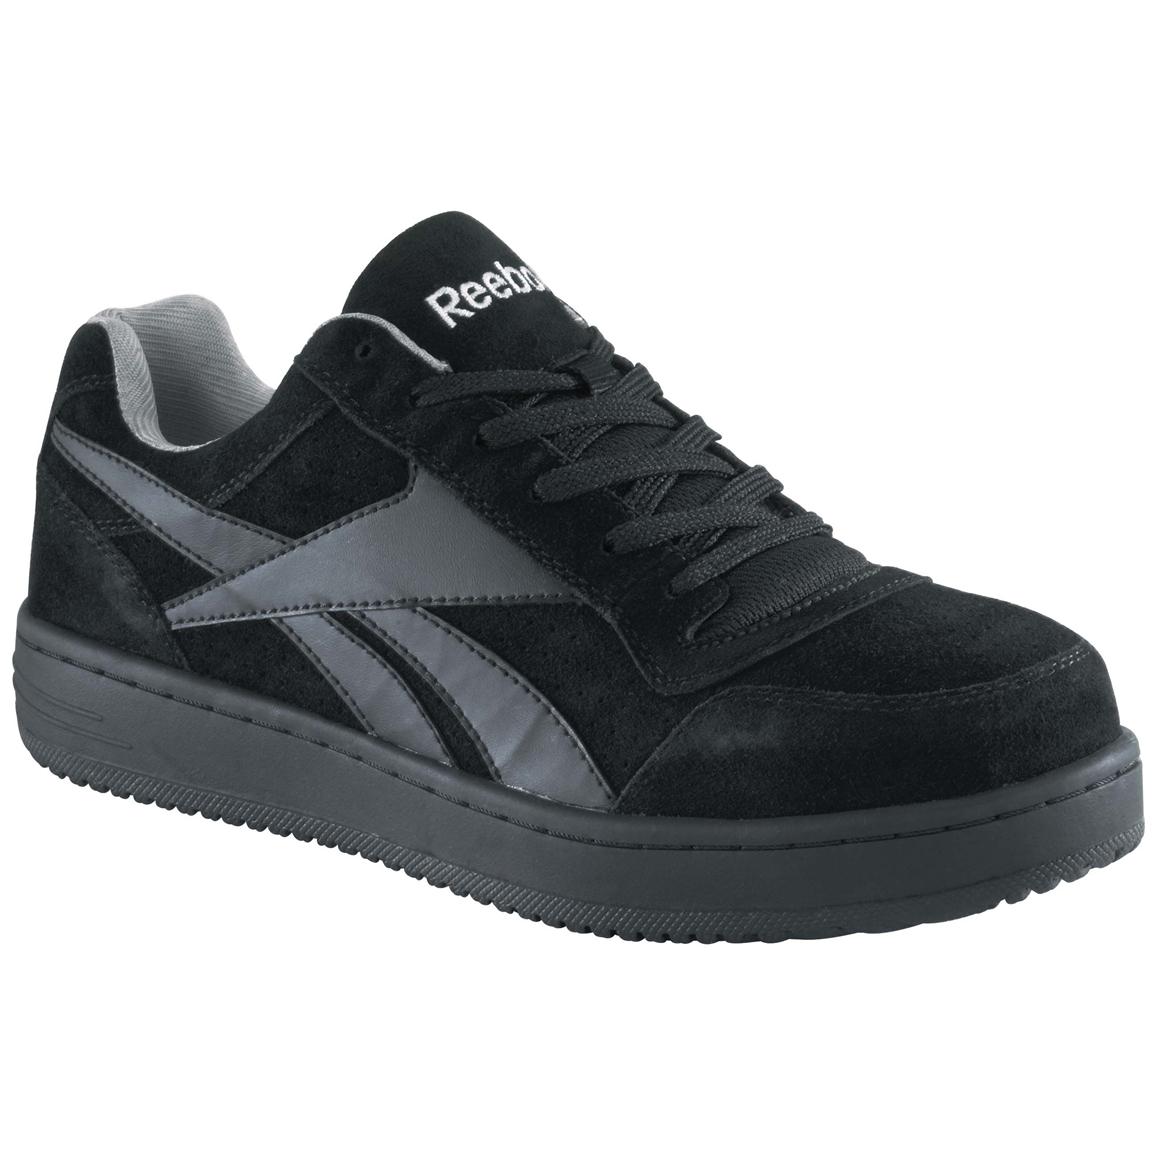 Men's Reebok Steel Toe Skateboard Shoes, Black 231909